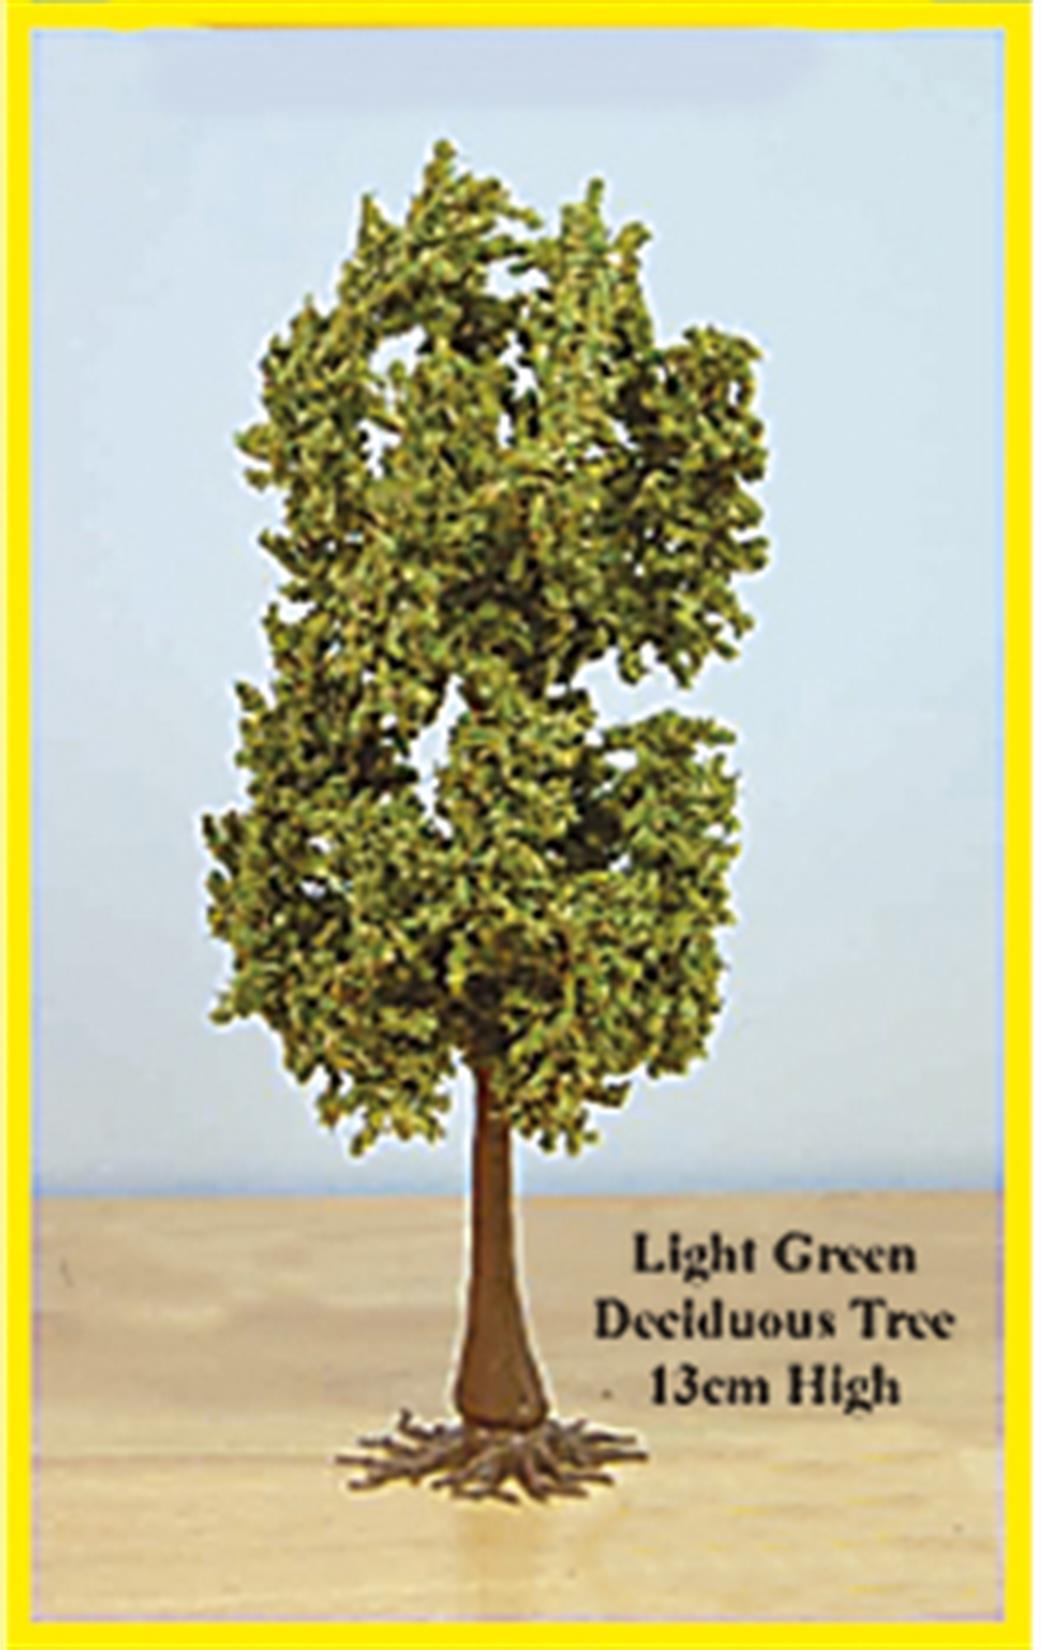 Expo  59400 Deciduous Tree Light Green 13cm